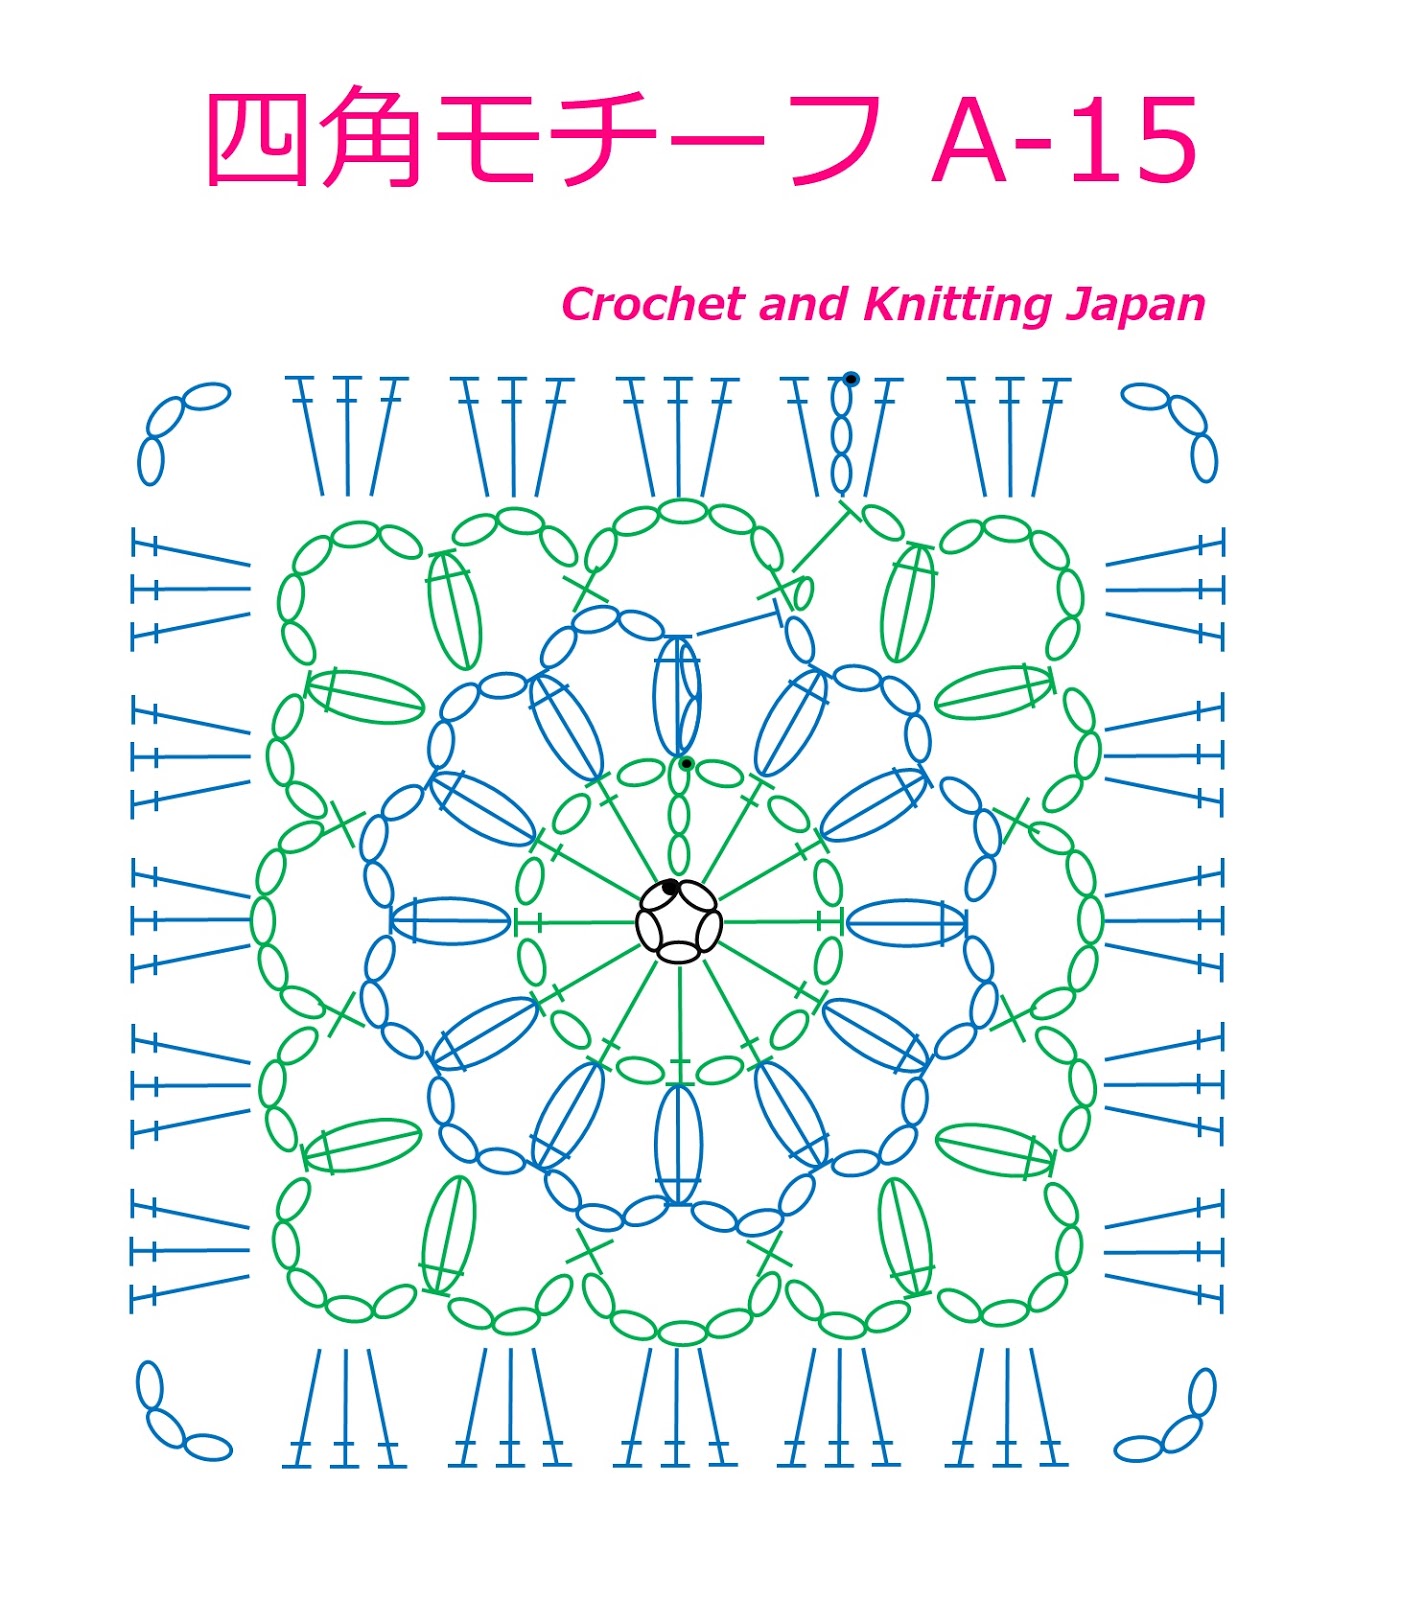 かぎ編み Crochet Japan クロッシェジャパン かぎ針編み四角モチーフ A 15 Crochet Square Motif 編み図 字幕解説 Crochet And Knitting Japan